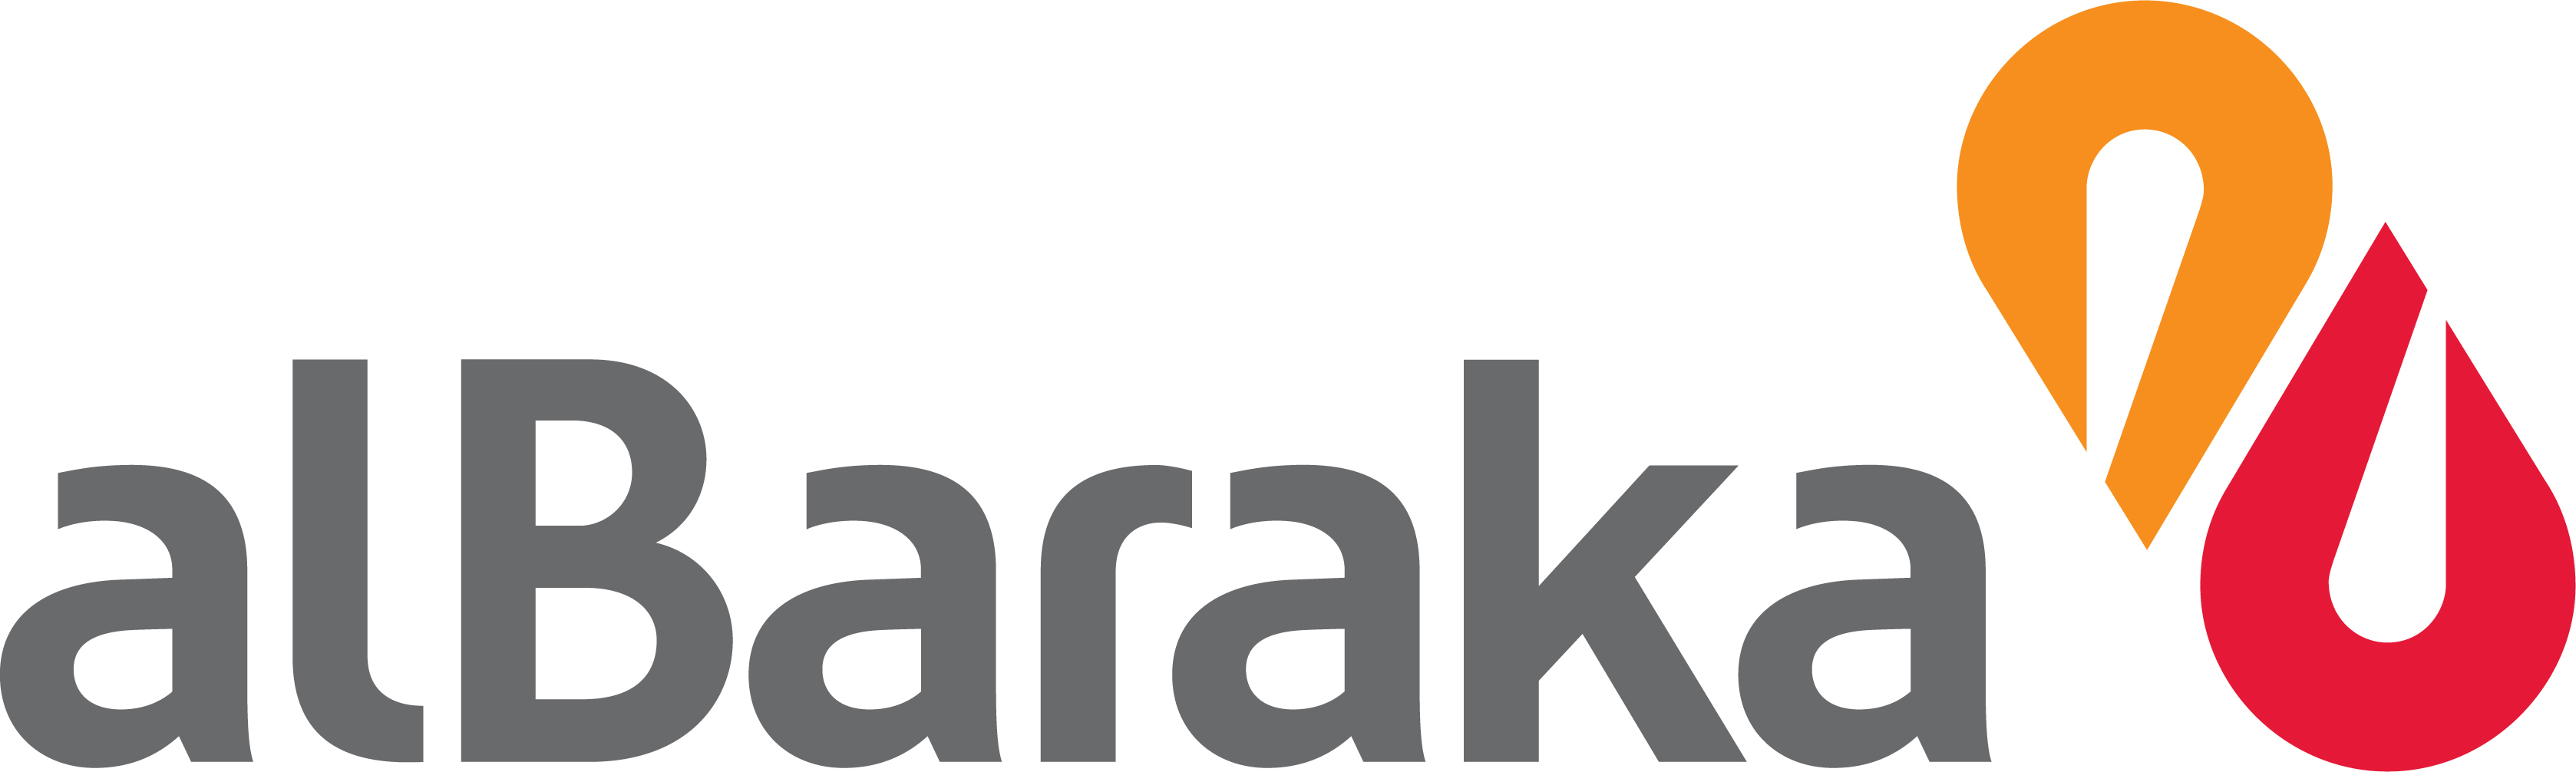 Albaraka Logoları - Albaraka Türk